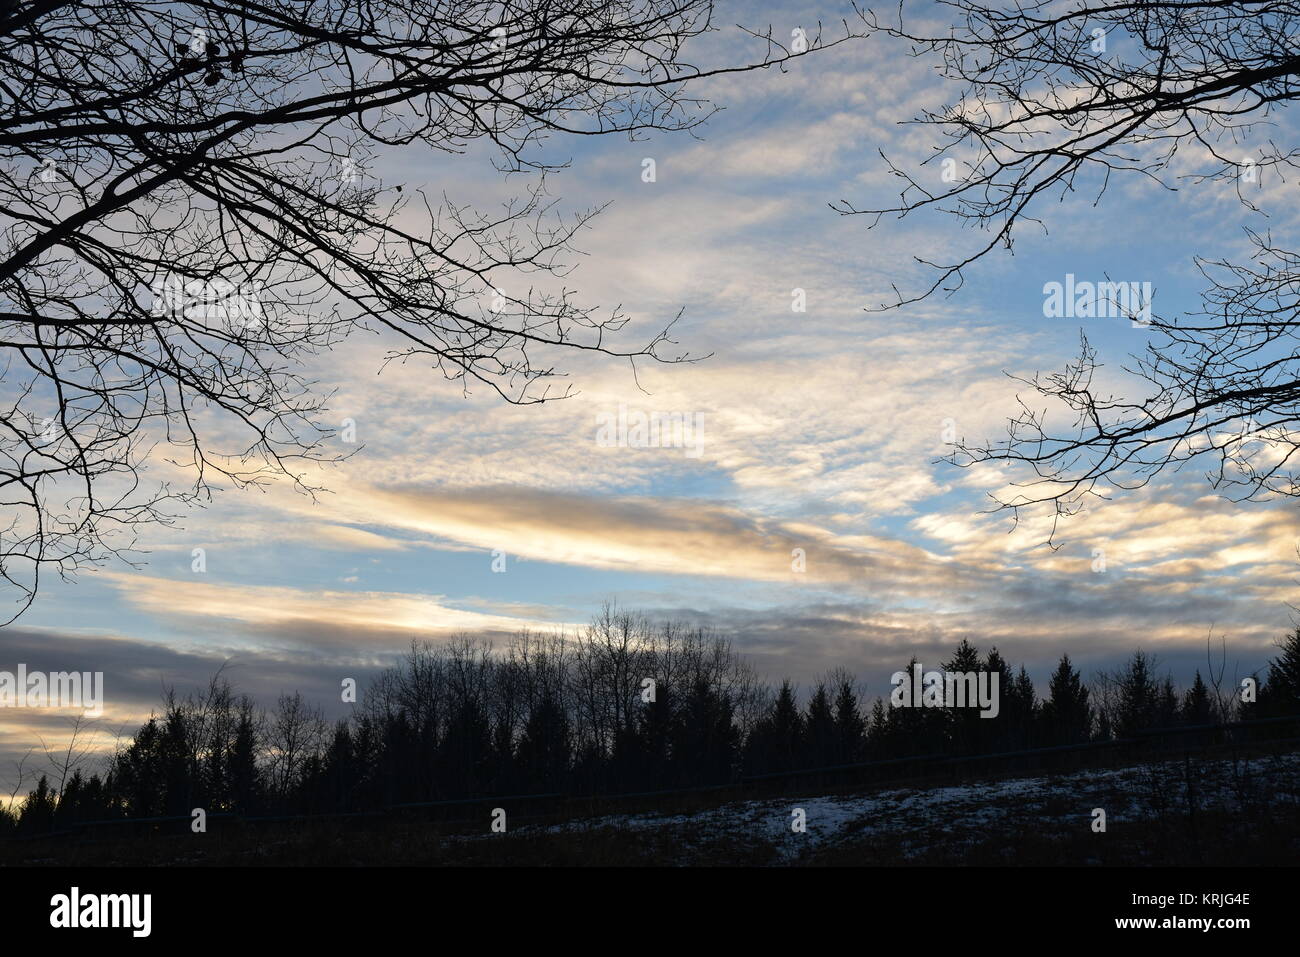 Suave y esponjoso nubes justo antes de la puesta del Sol tomada el 12 de diciembre, 2017 a las 4:30 P.M. Foto de stock